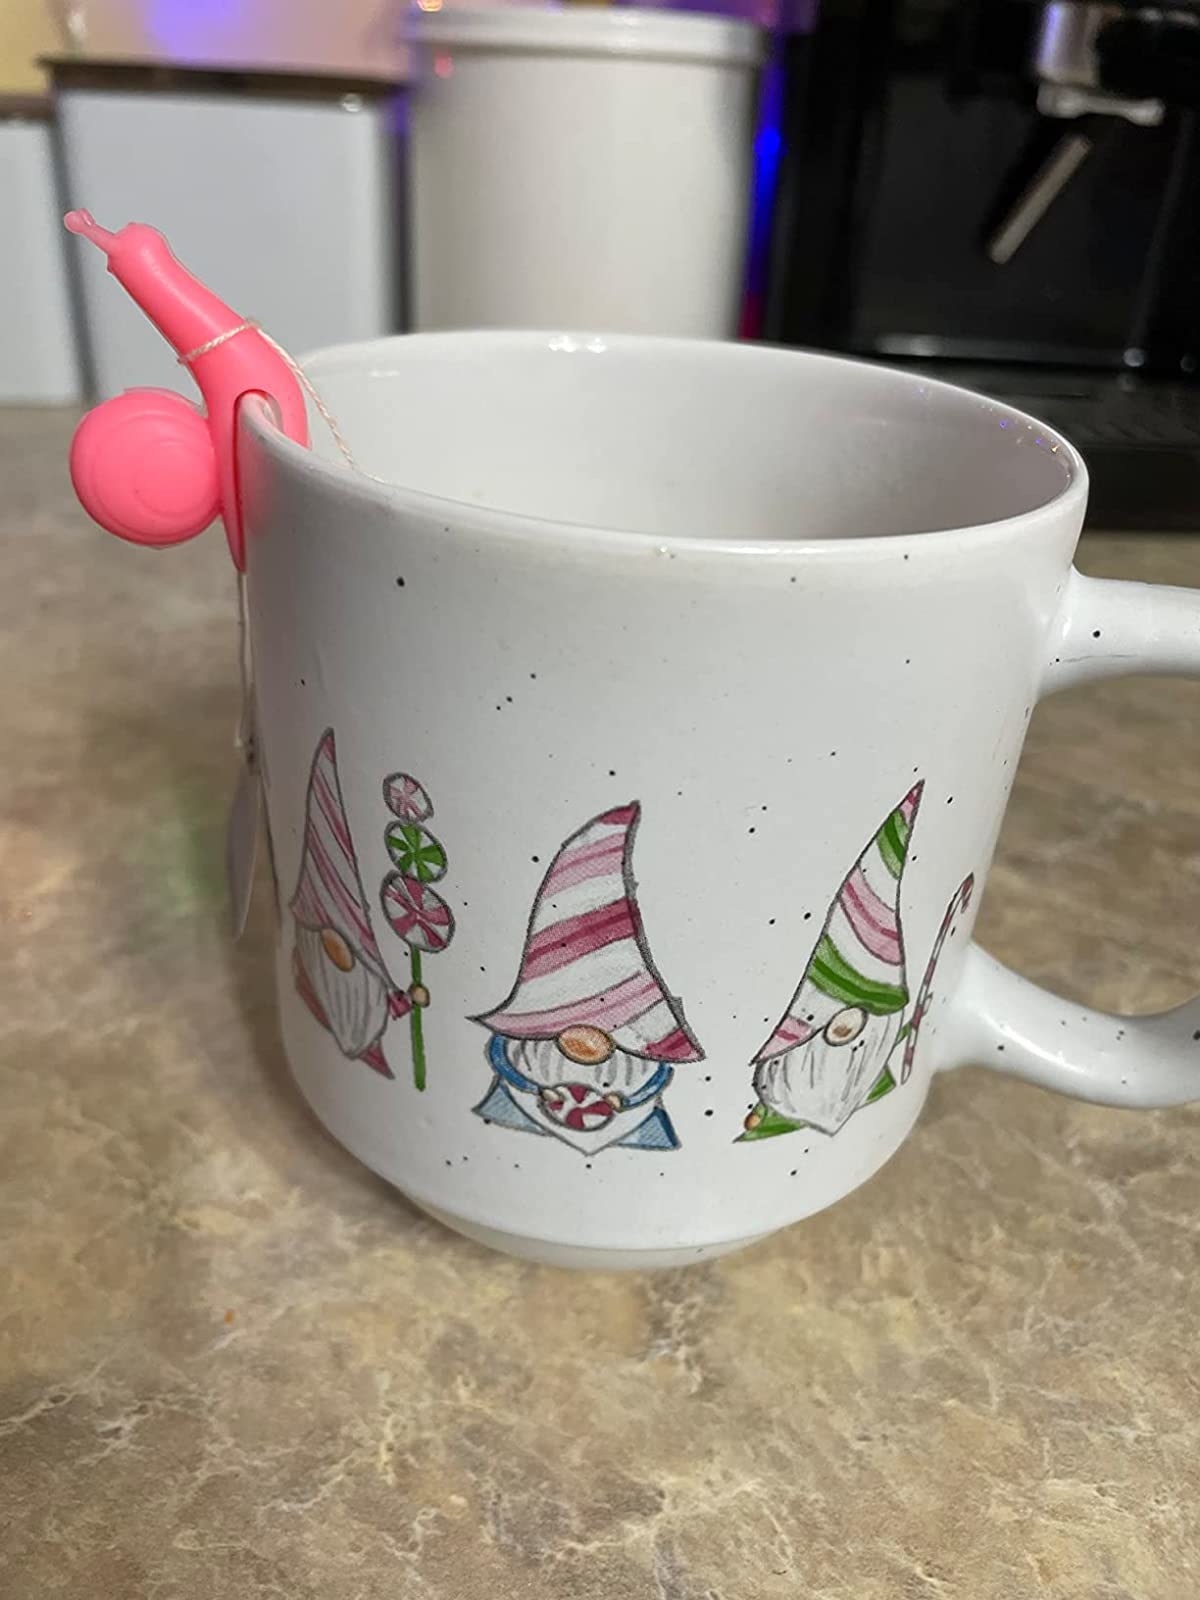 Reviewer image of pink snail teabag holder on a gnome mug